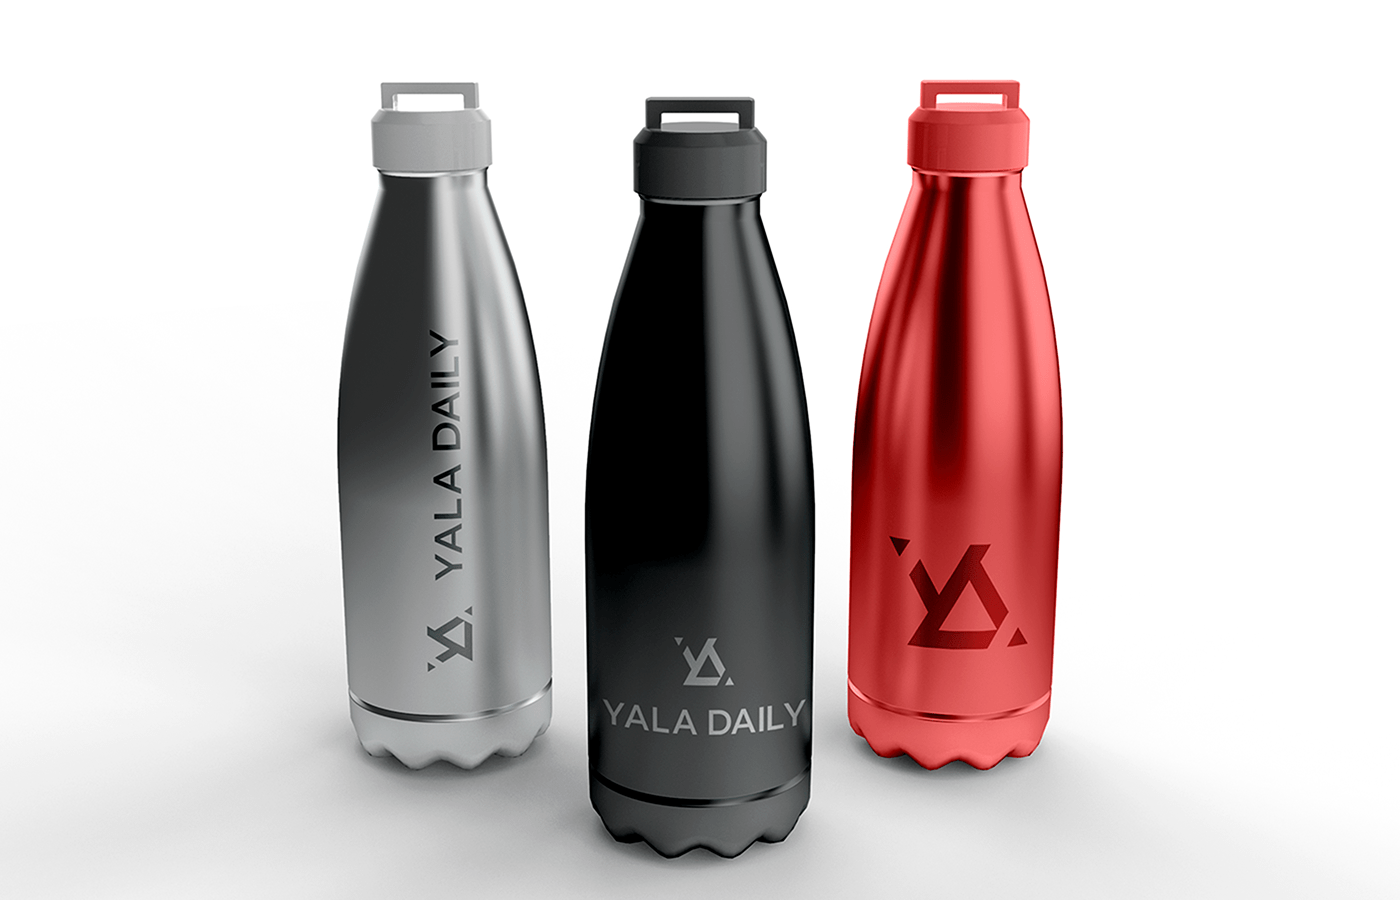 Logo on bottles